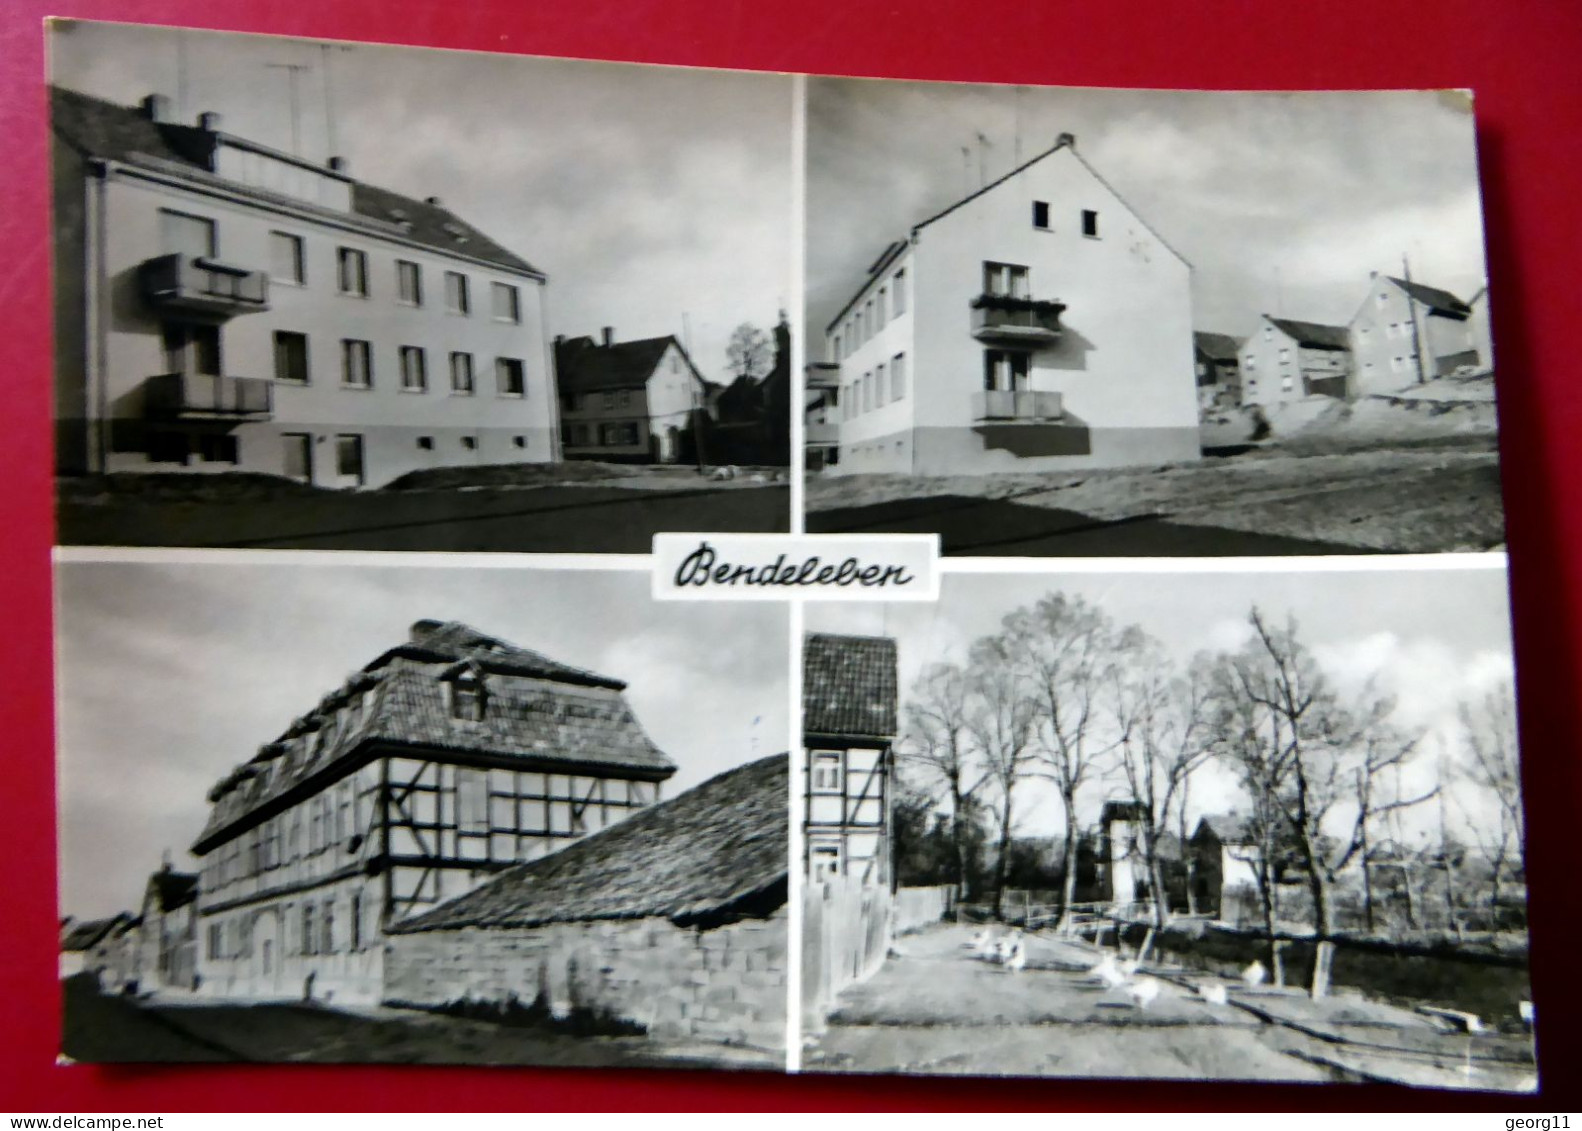 Bendeleben - Kyffhäuserland - DDR 1970 - Echt Foto - Sondershausen - Barockdorf - Sondershausen